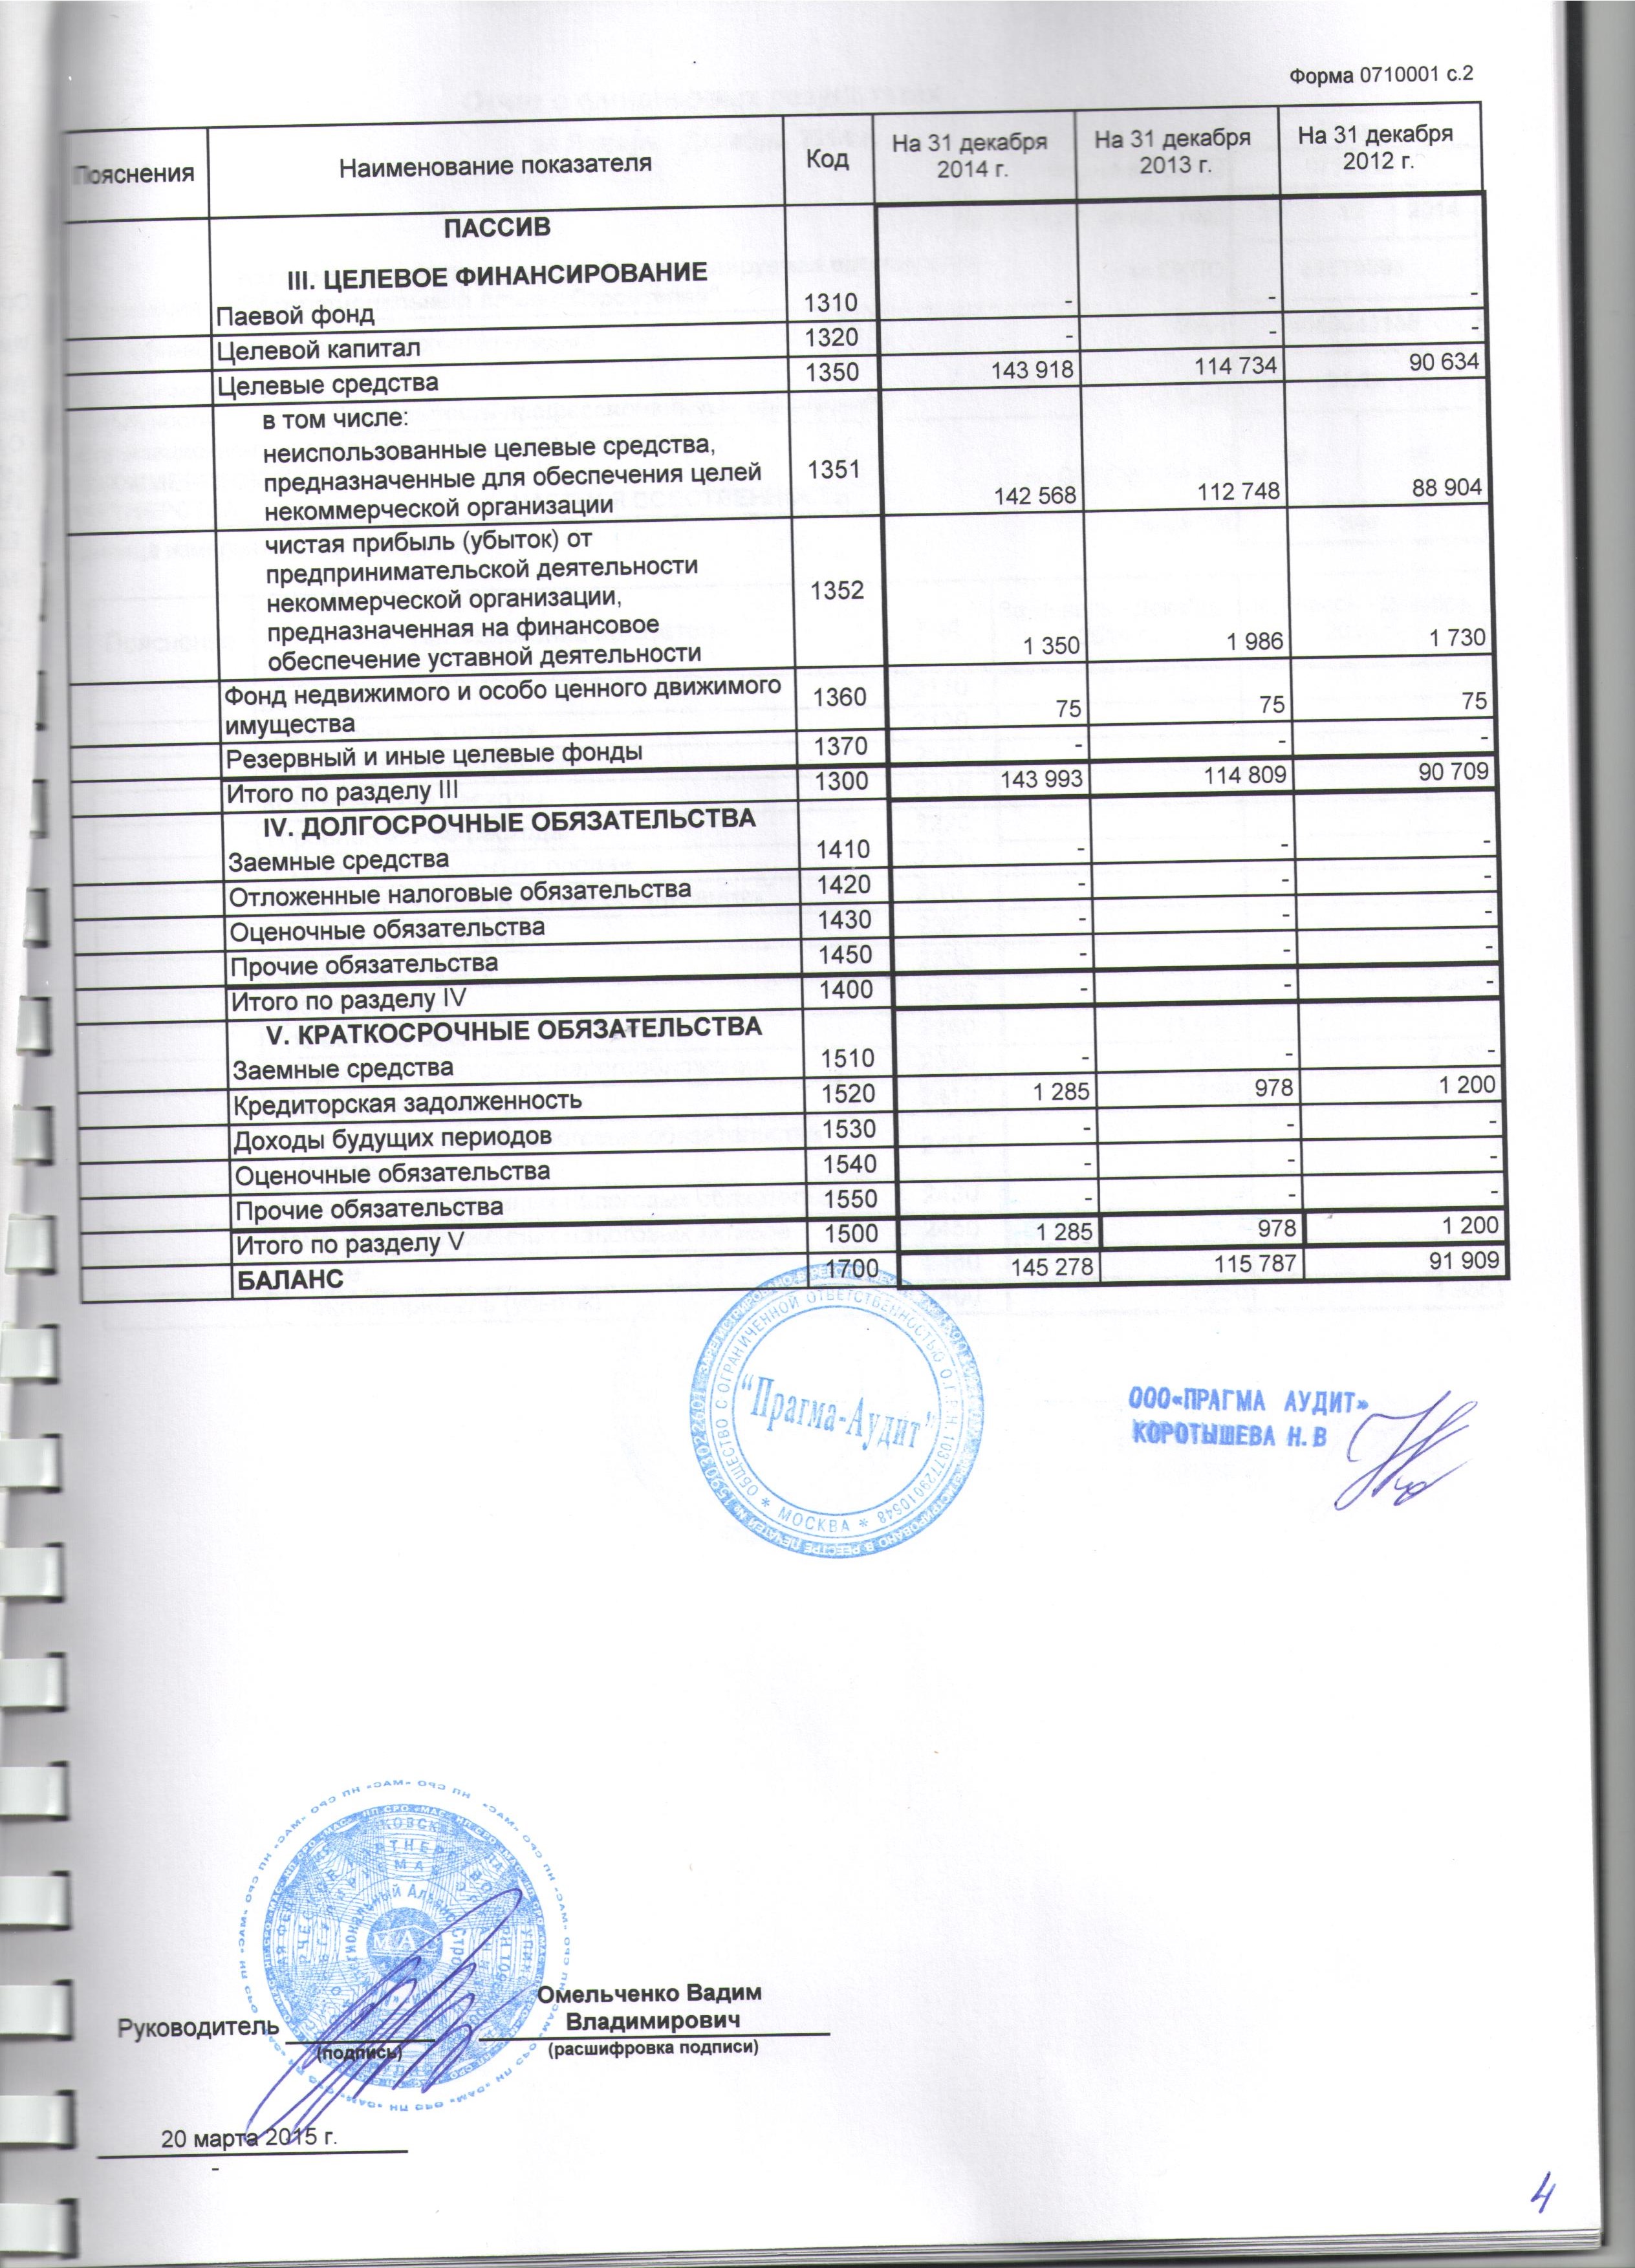 Бухгалтерская отчетность за 2014 г. (лист 2)